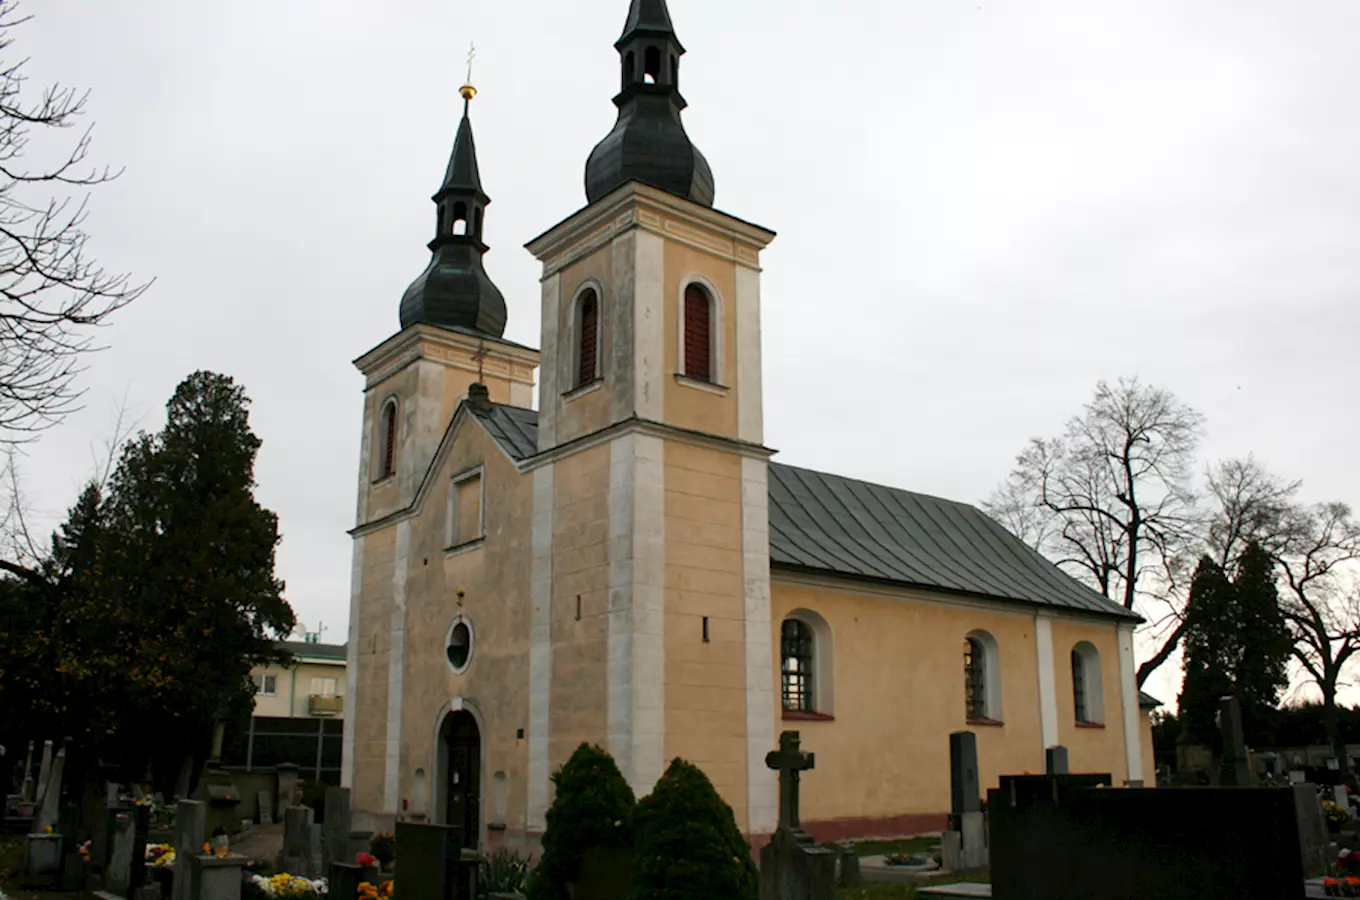 Hřbitovní kostel Navštívení Panny Marie v Přelouči 